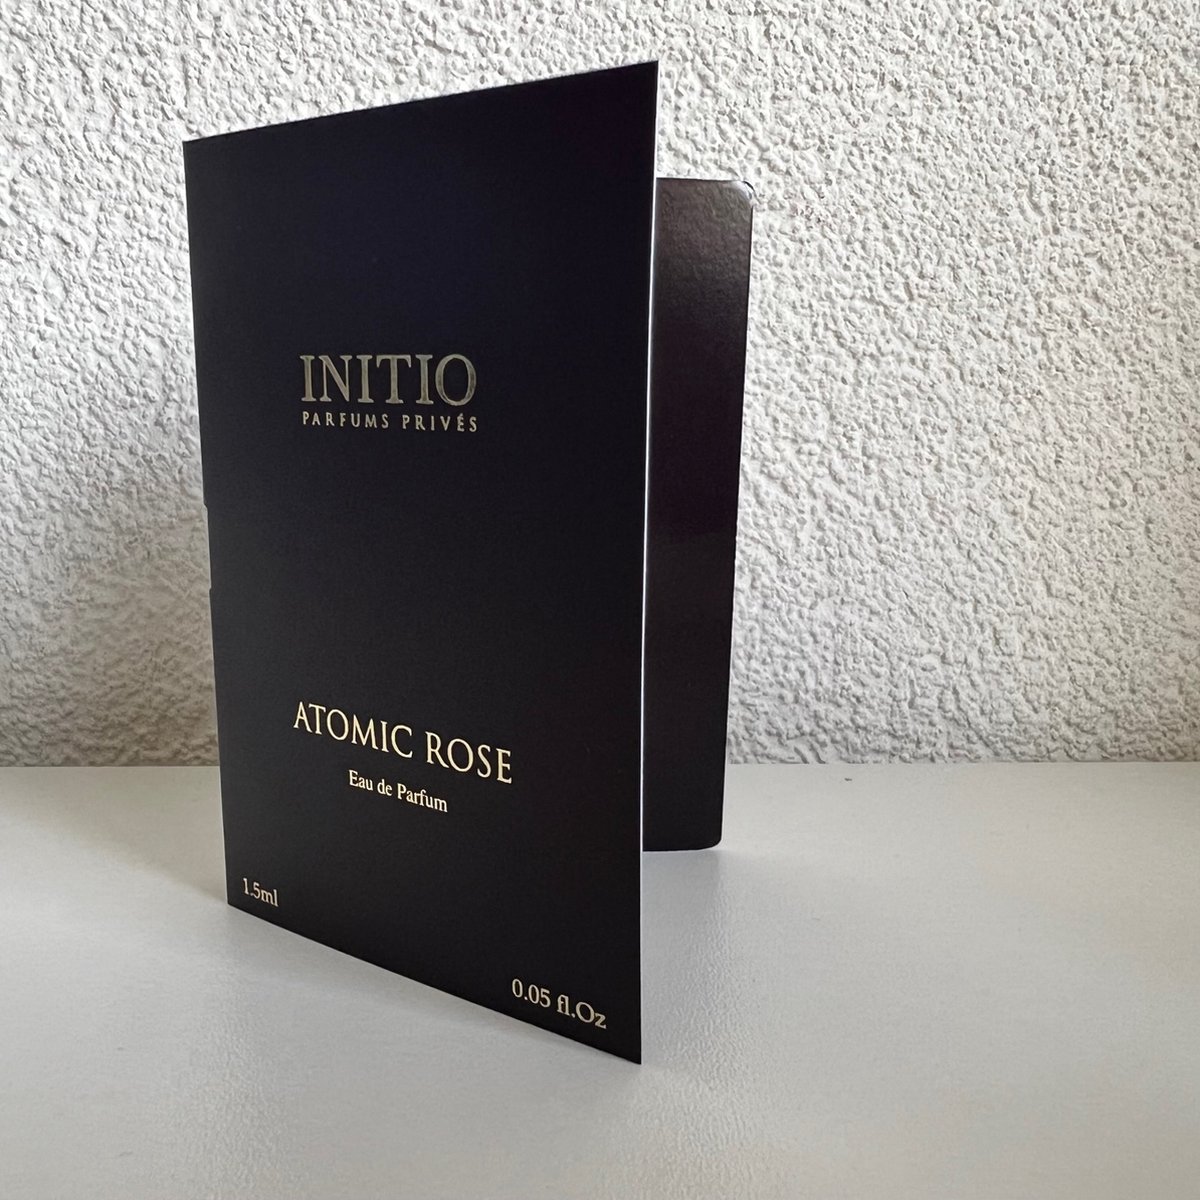 Initio - Atomic Rose - 1,5 ml Original Sample